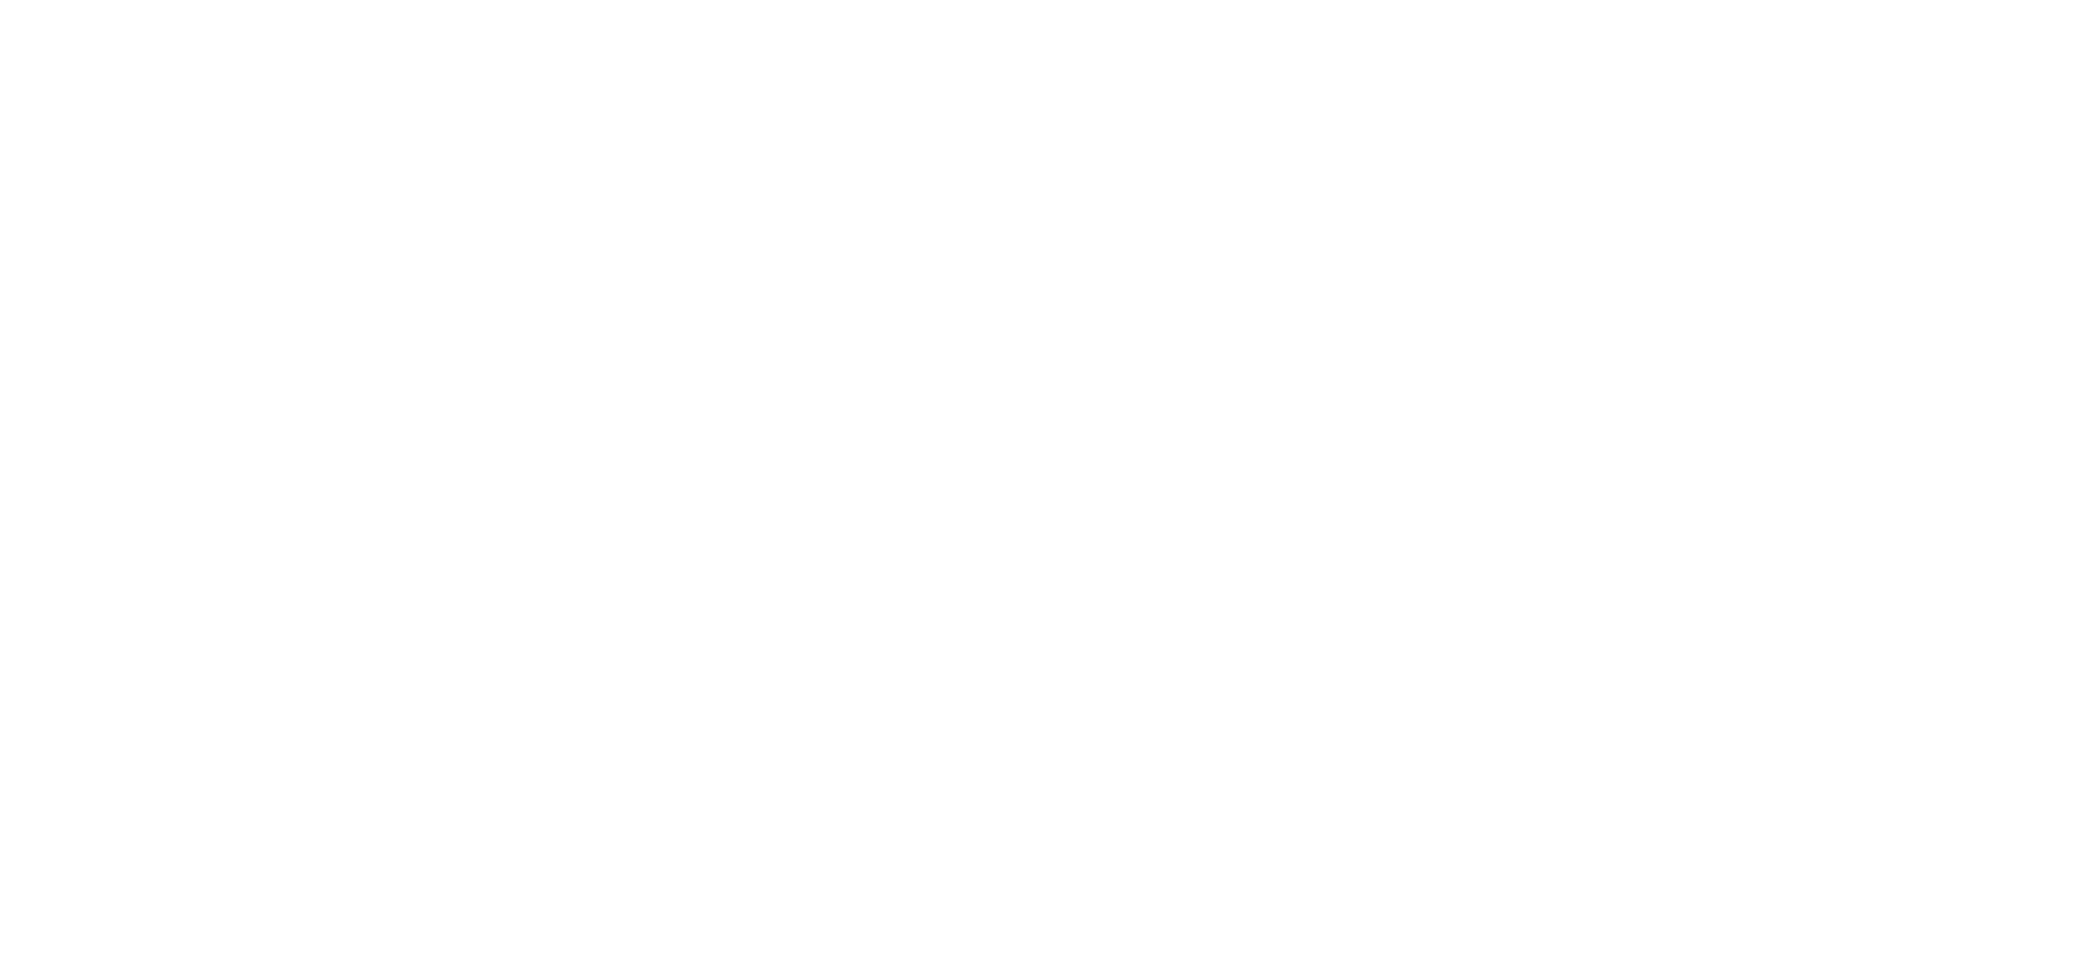 SISTEMA UNESCO BRASÍLIA DE OPERAÇÕES